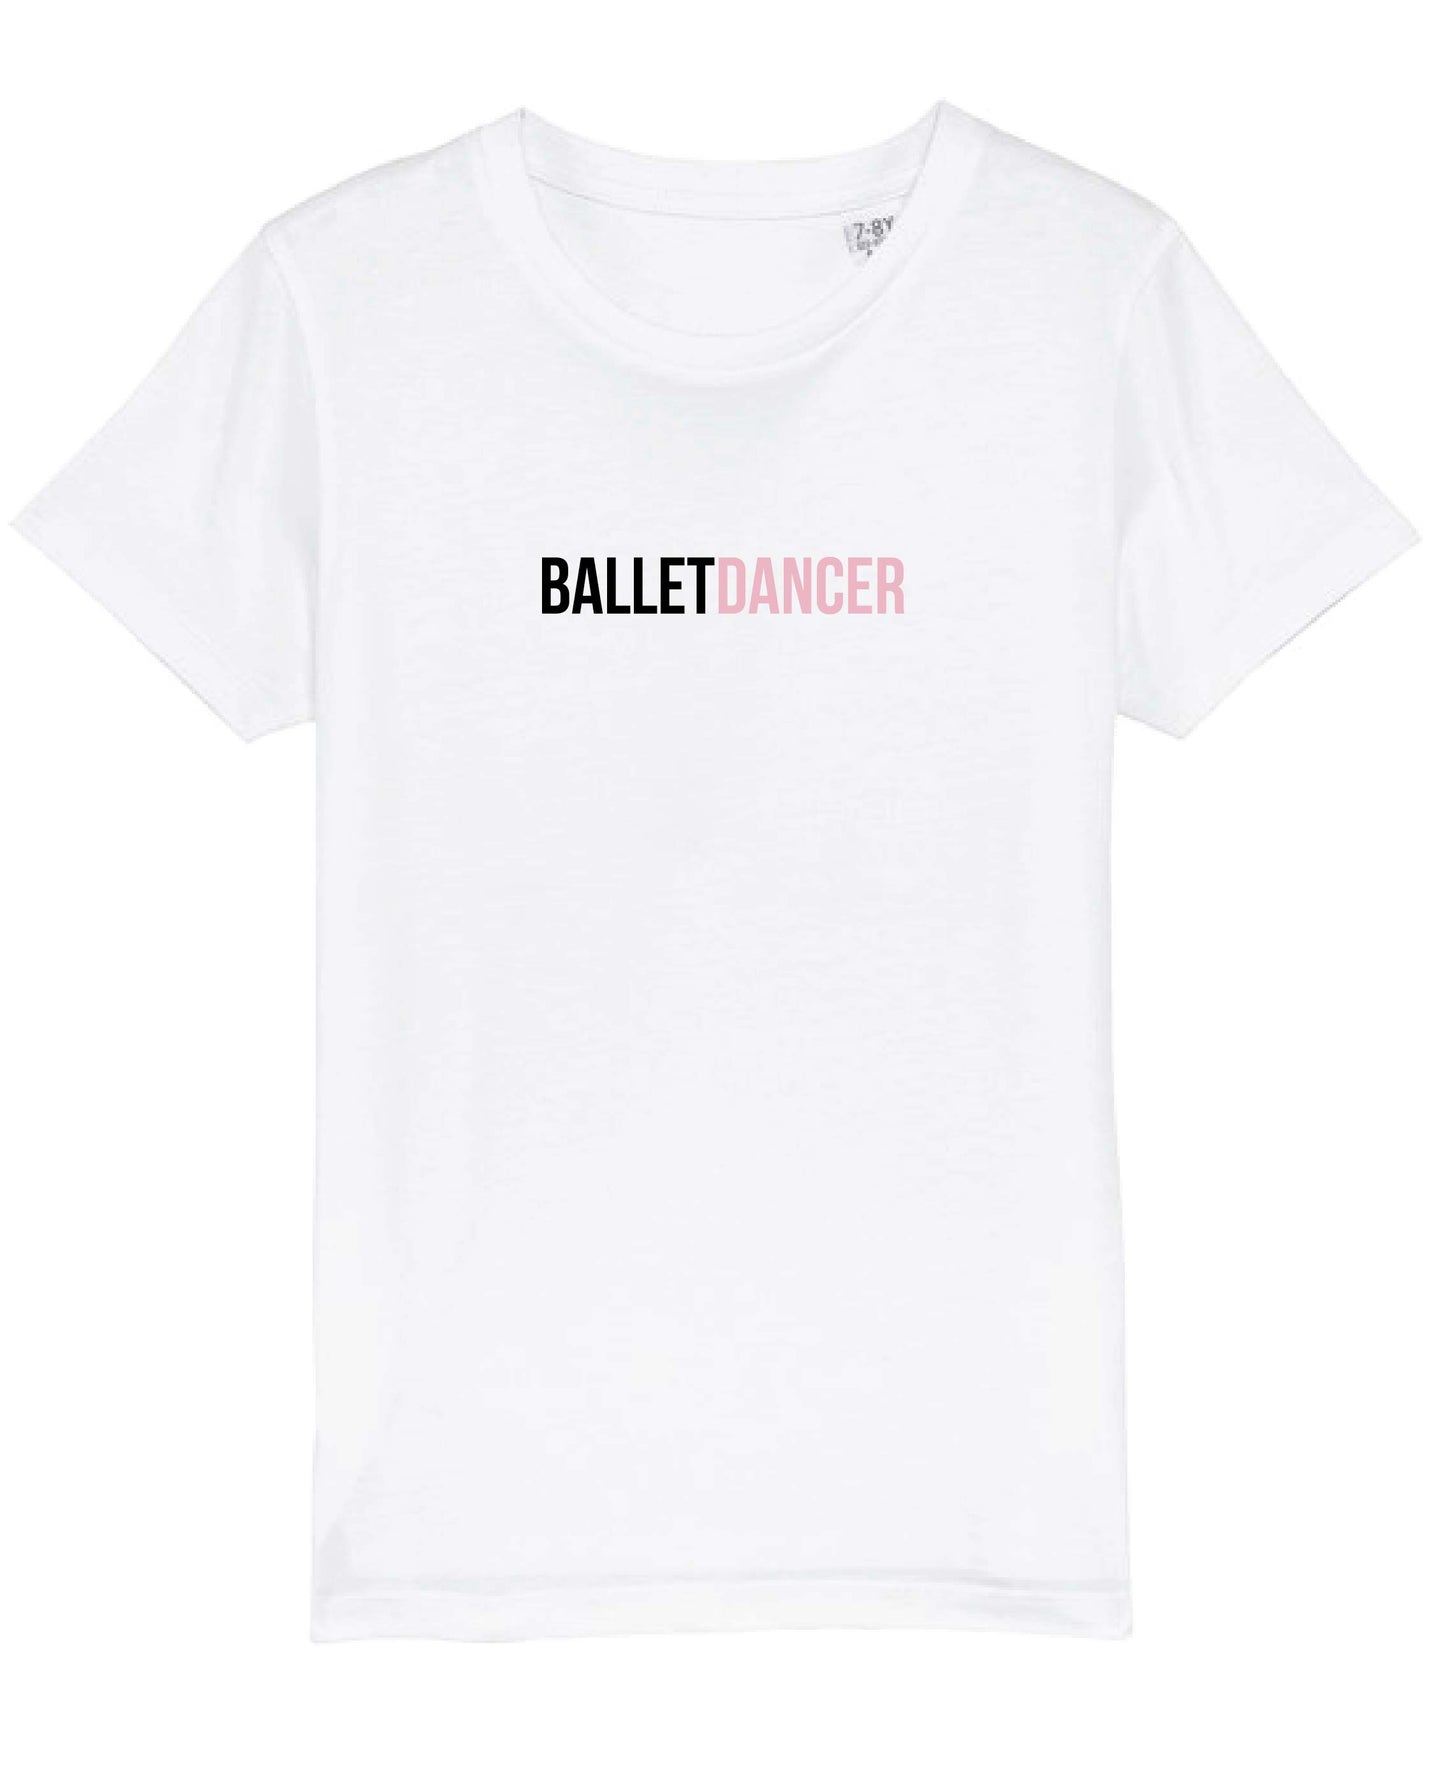 Dancer (Styles) T-Shirt